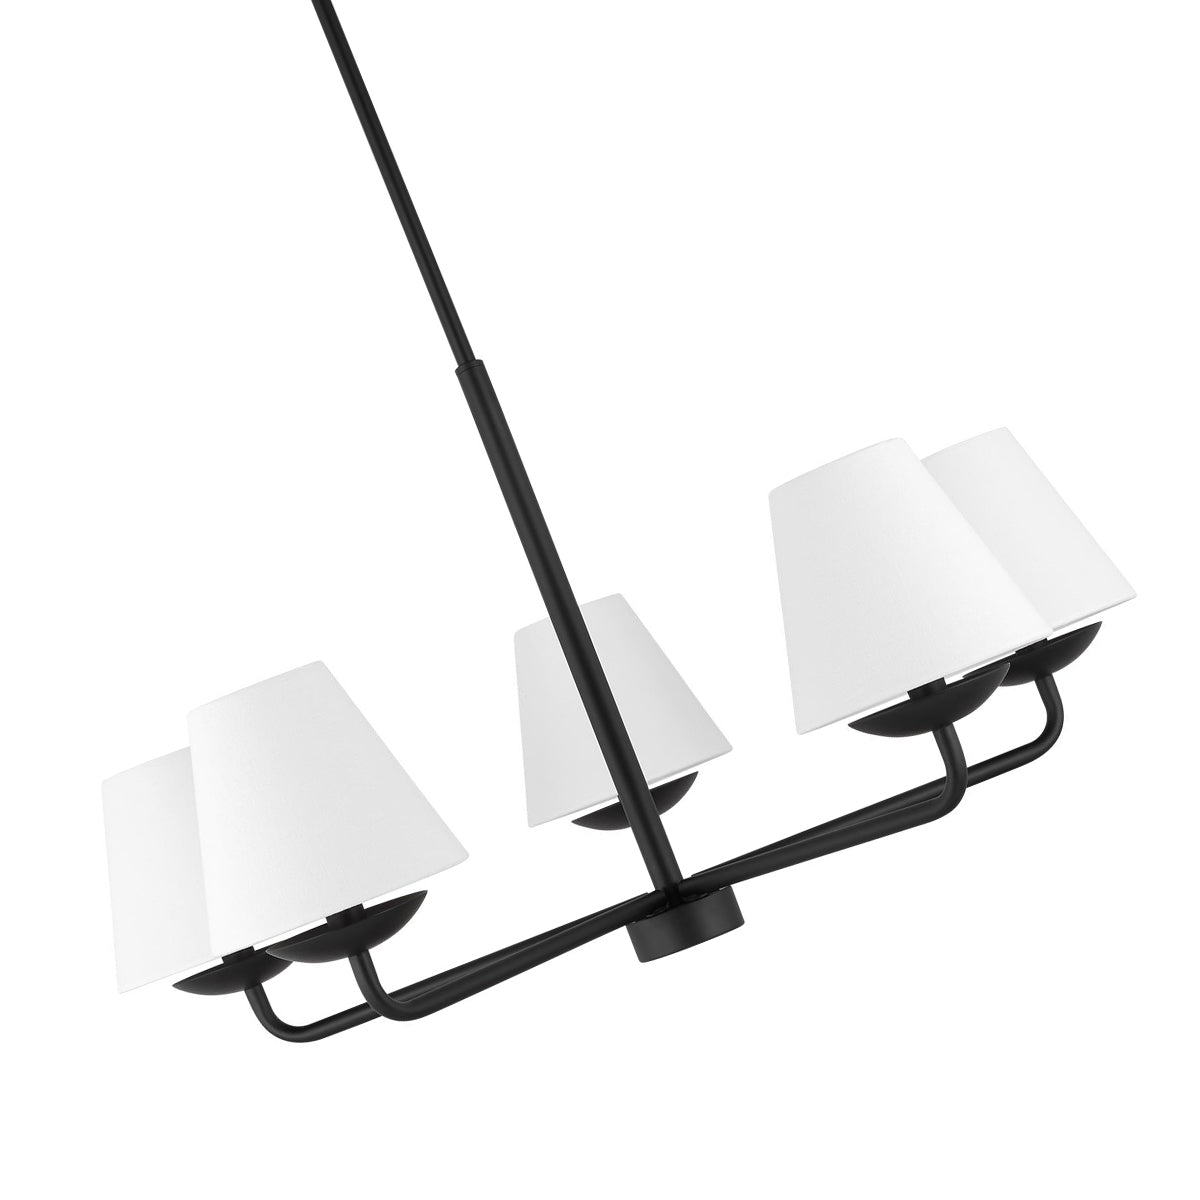 Albion 5L chandelier - DJC1175MBK